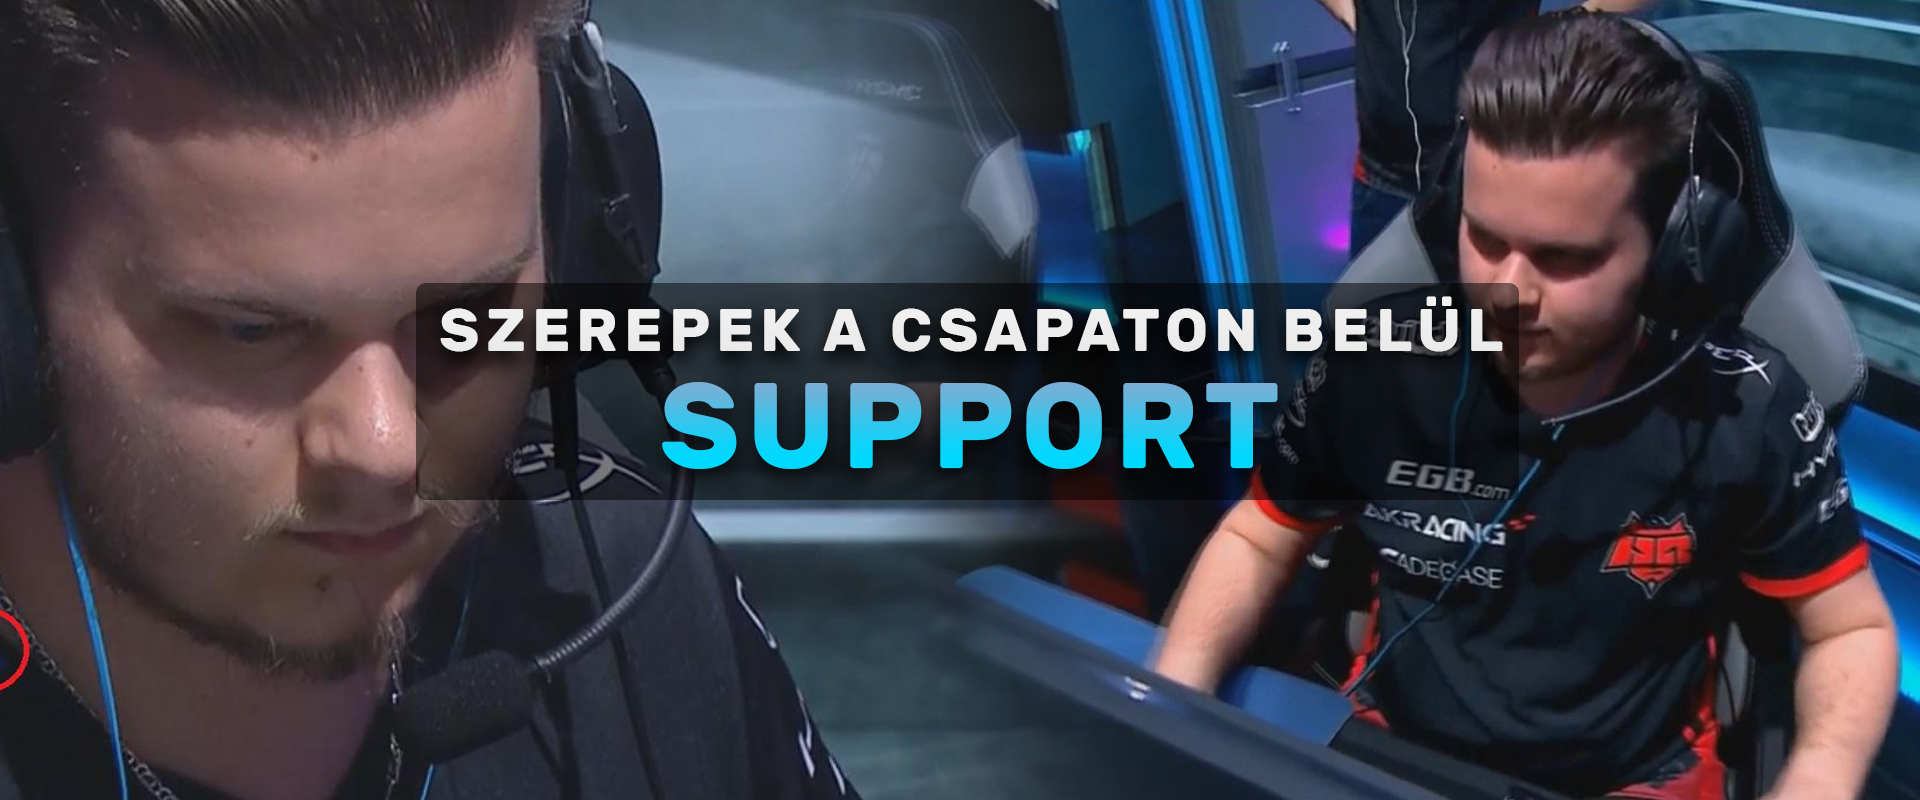 CS:GO szerepek a csapaton belül: A Support - Második rész